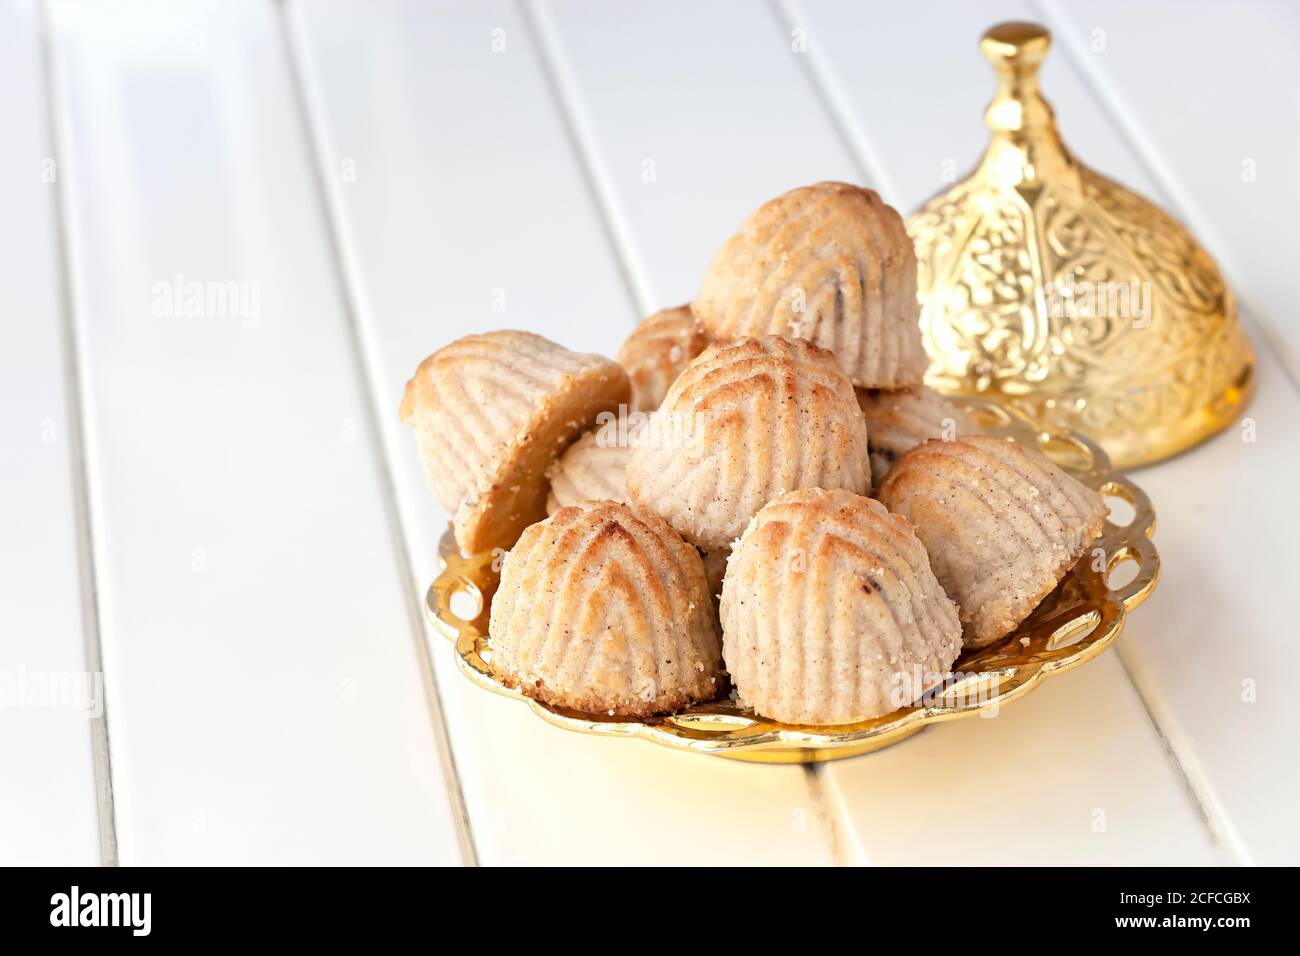 Maamoul pâtisserie traditionnelle arabe ou biscuit aux dattes ou noix de cajou ou d'amande ou de pistaches noix dans une assiette dorée. Bonbons de l'est. Gros plan Banque D'Images